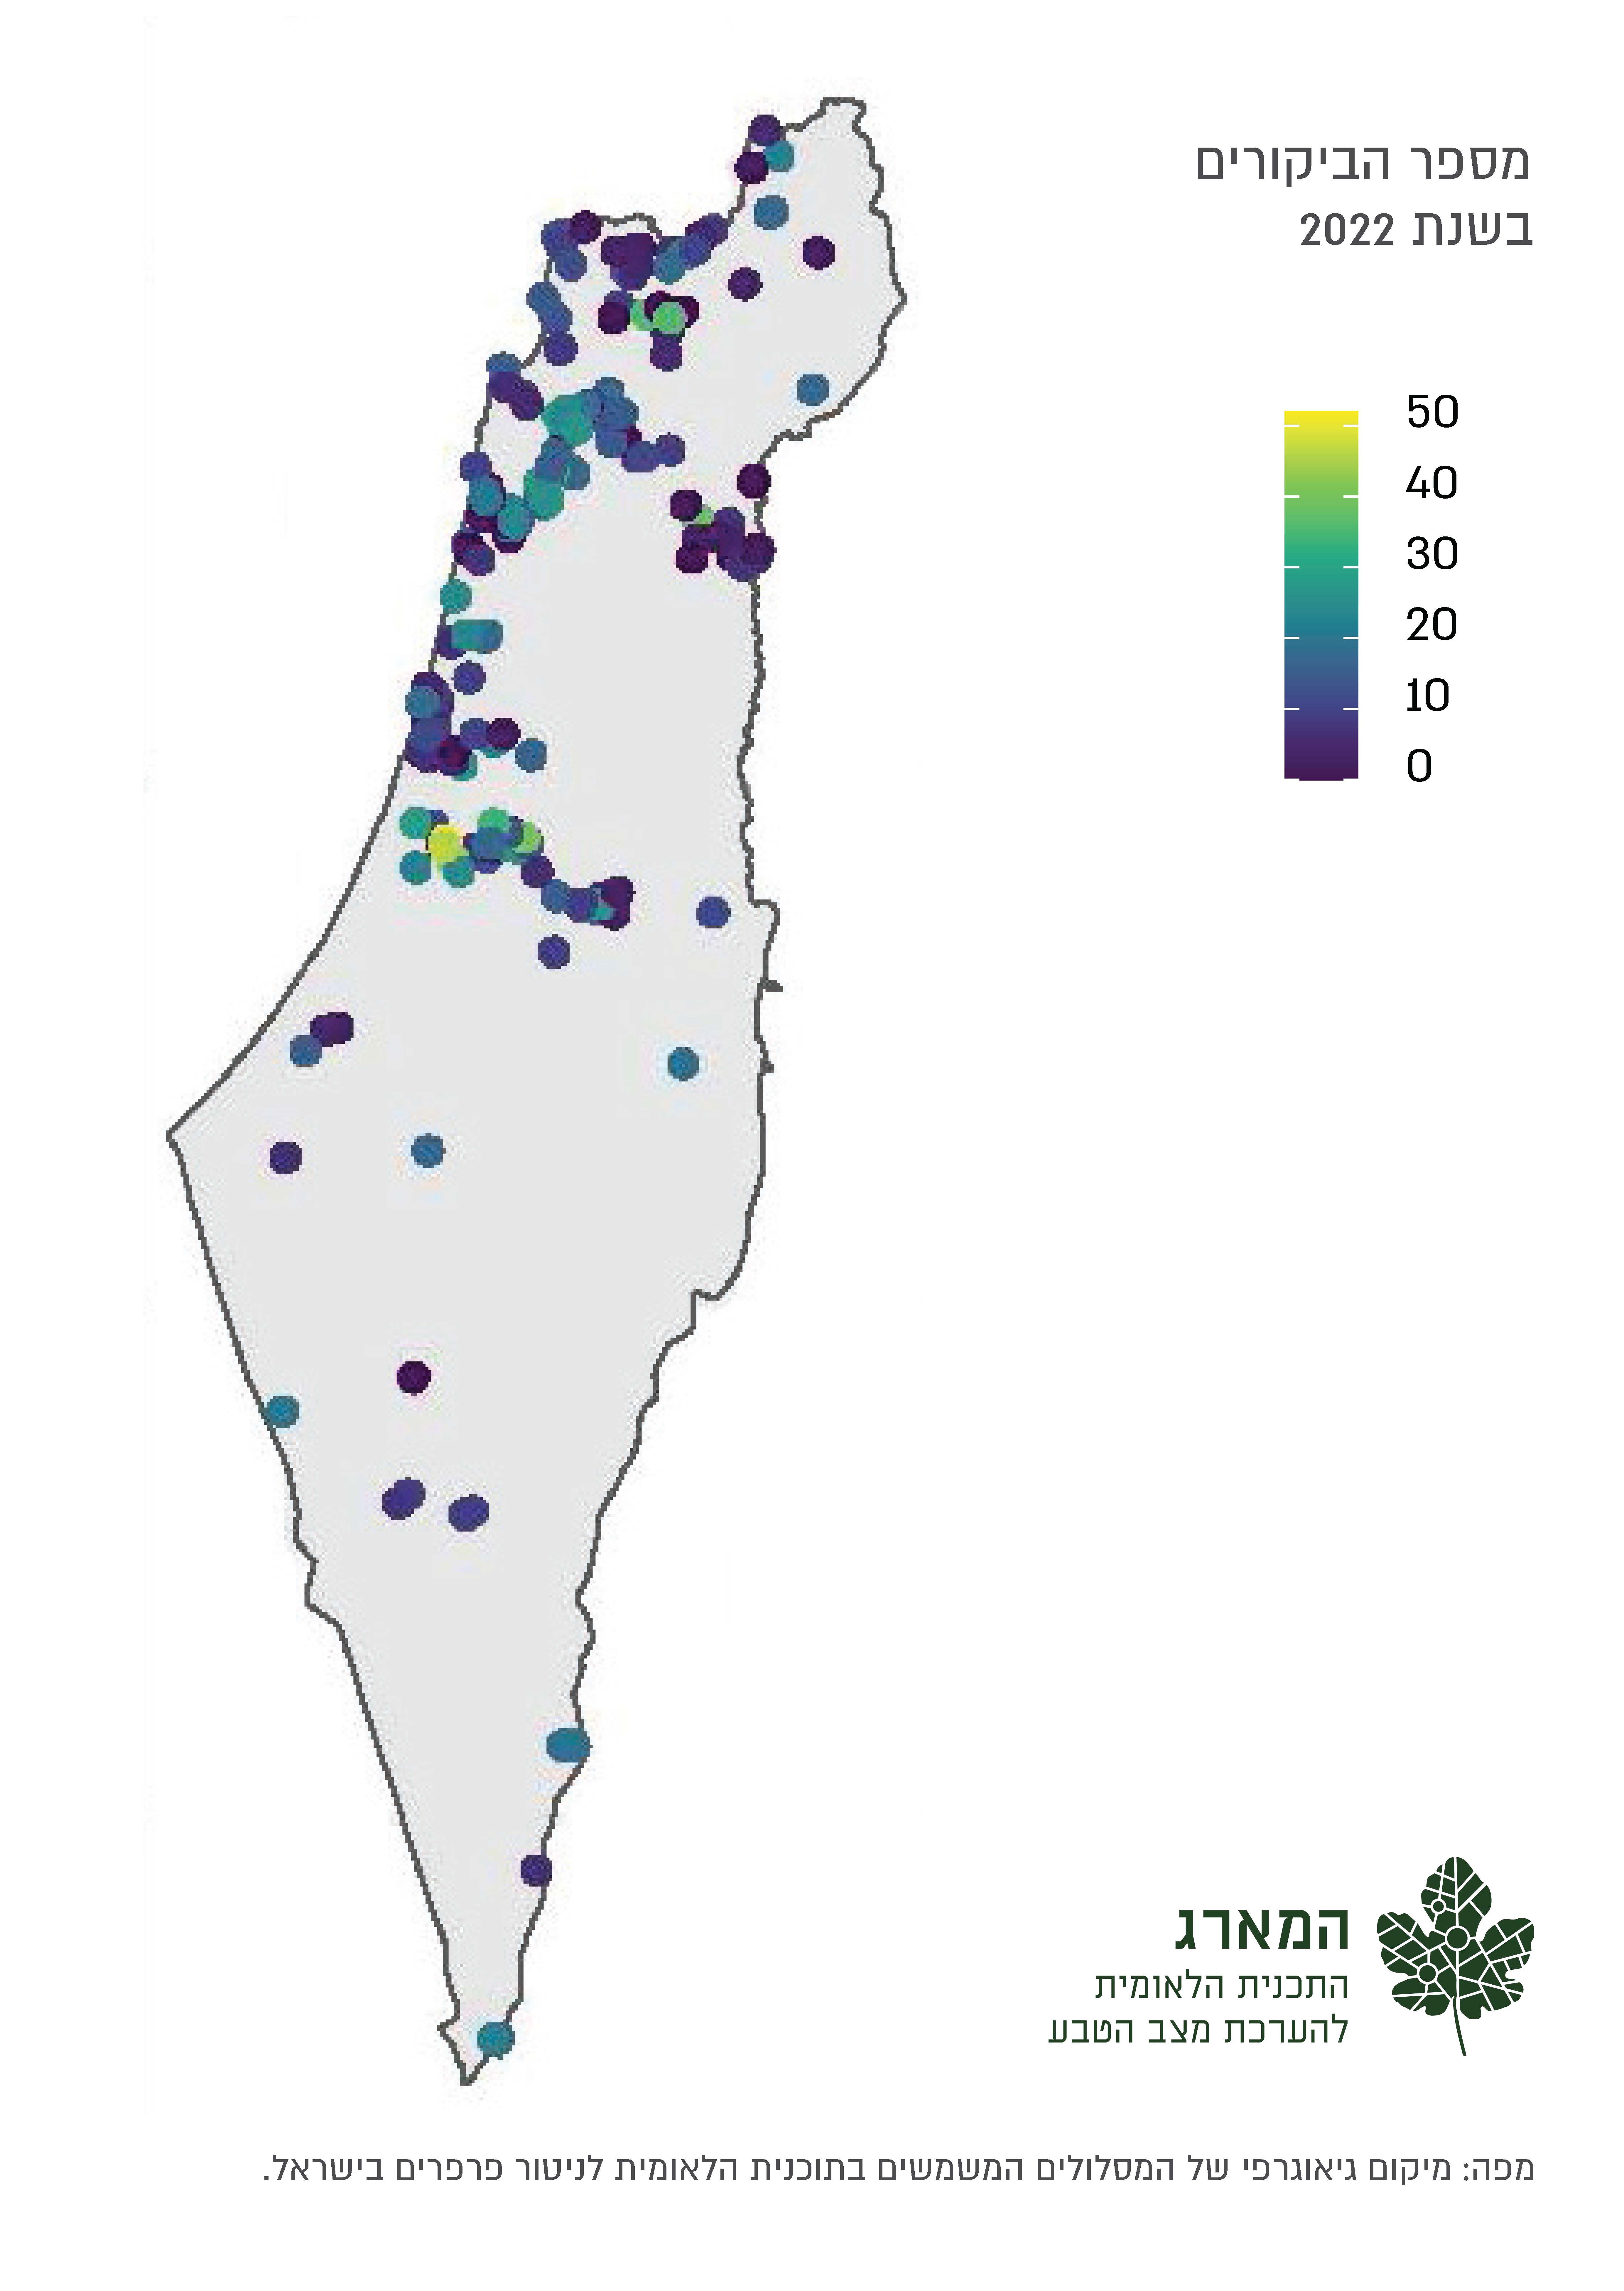 מיקום גיאוגרפי של המסלולים המשמשים בתוכנית הלאומית לניטור פרפרים בישראל